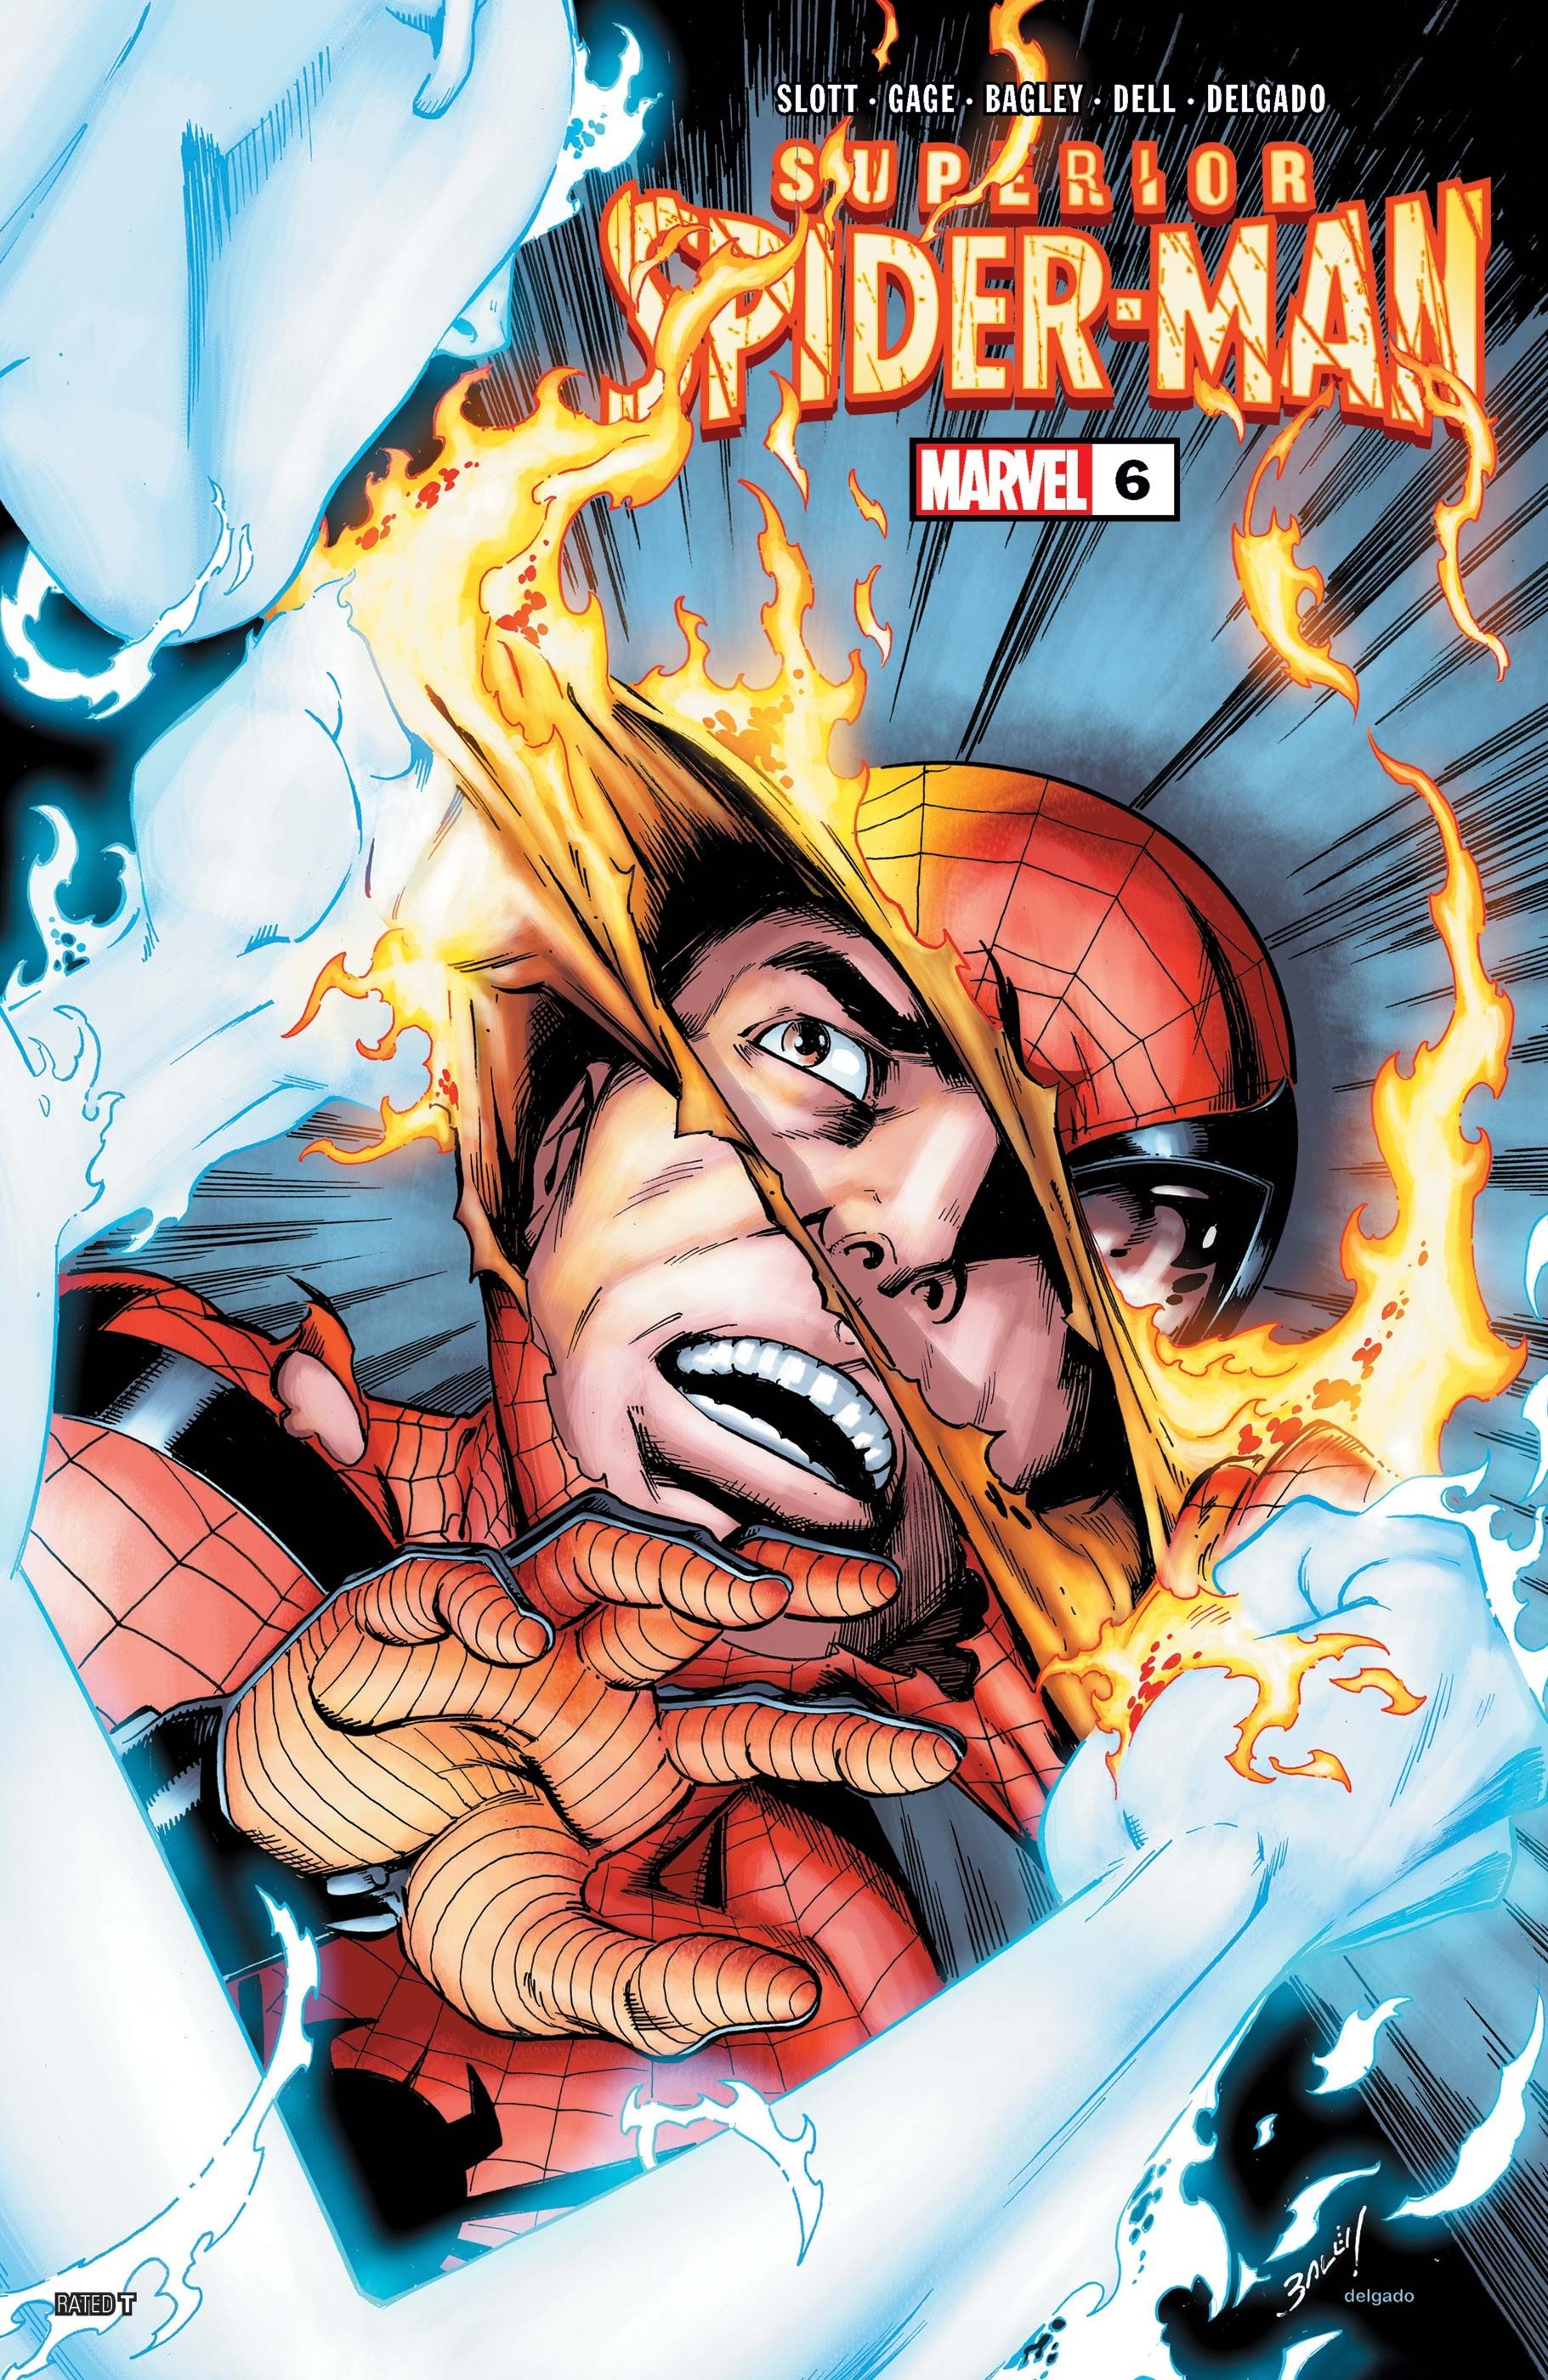 Capa superior do Homem-Aranha #6, Supernova arranca a máscara do rosto do Homem-Aranha com suas mãos em chamas.